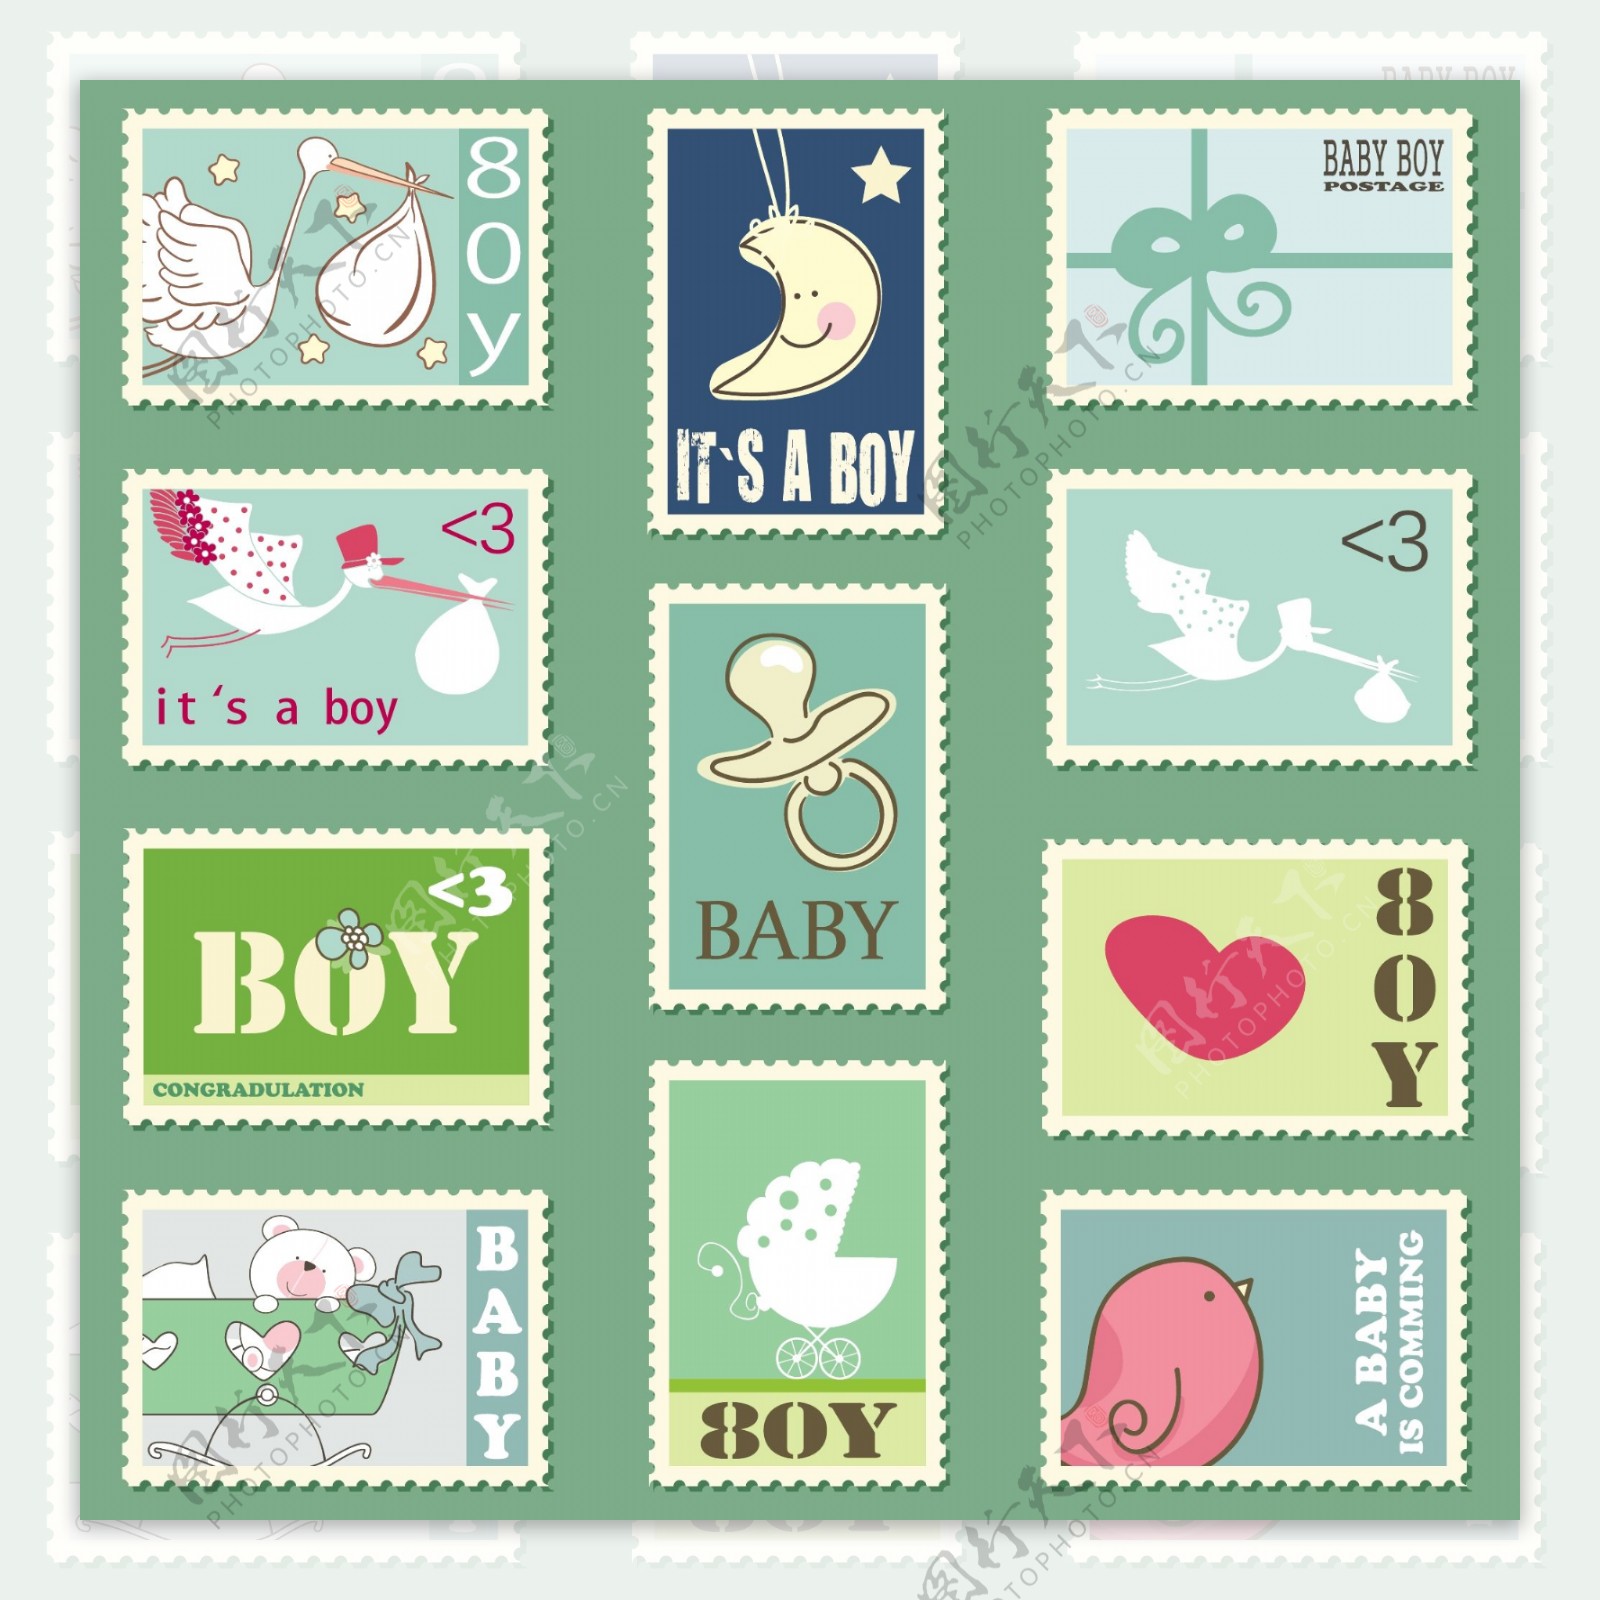 卡通母婴邮票矢量素材图片